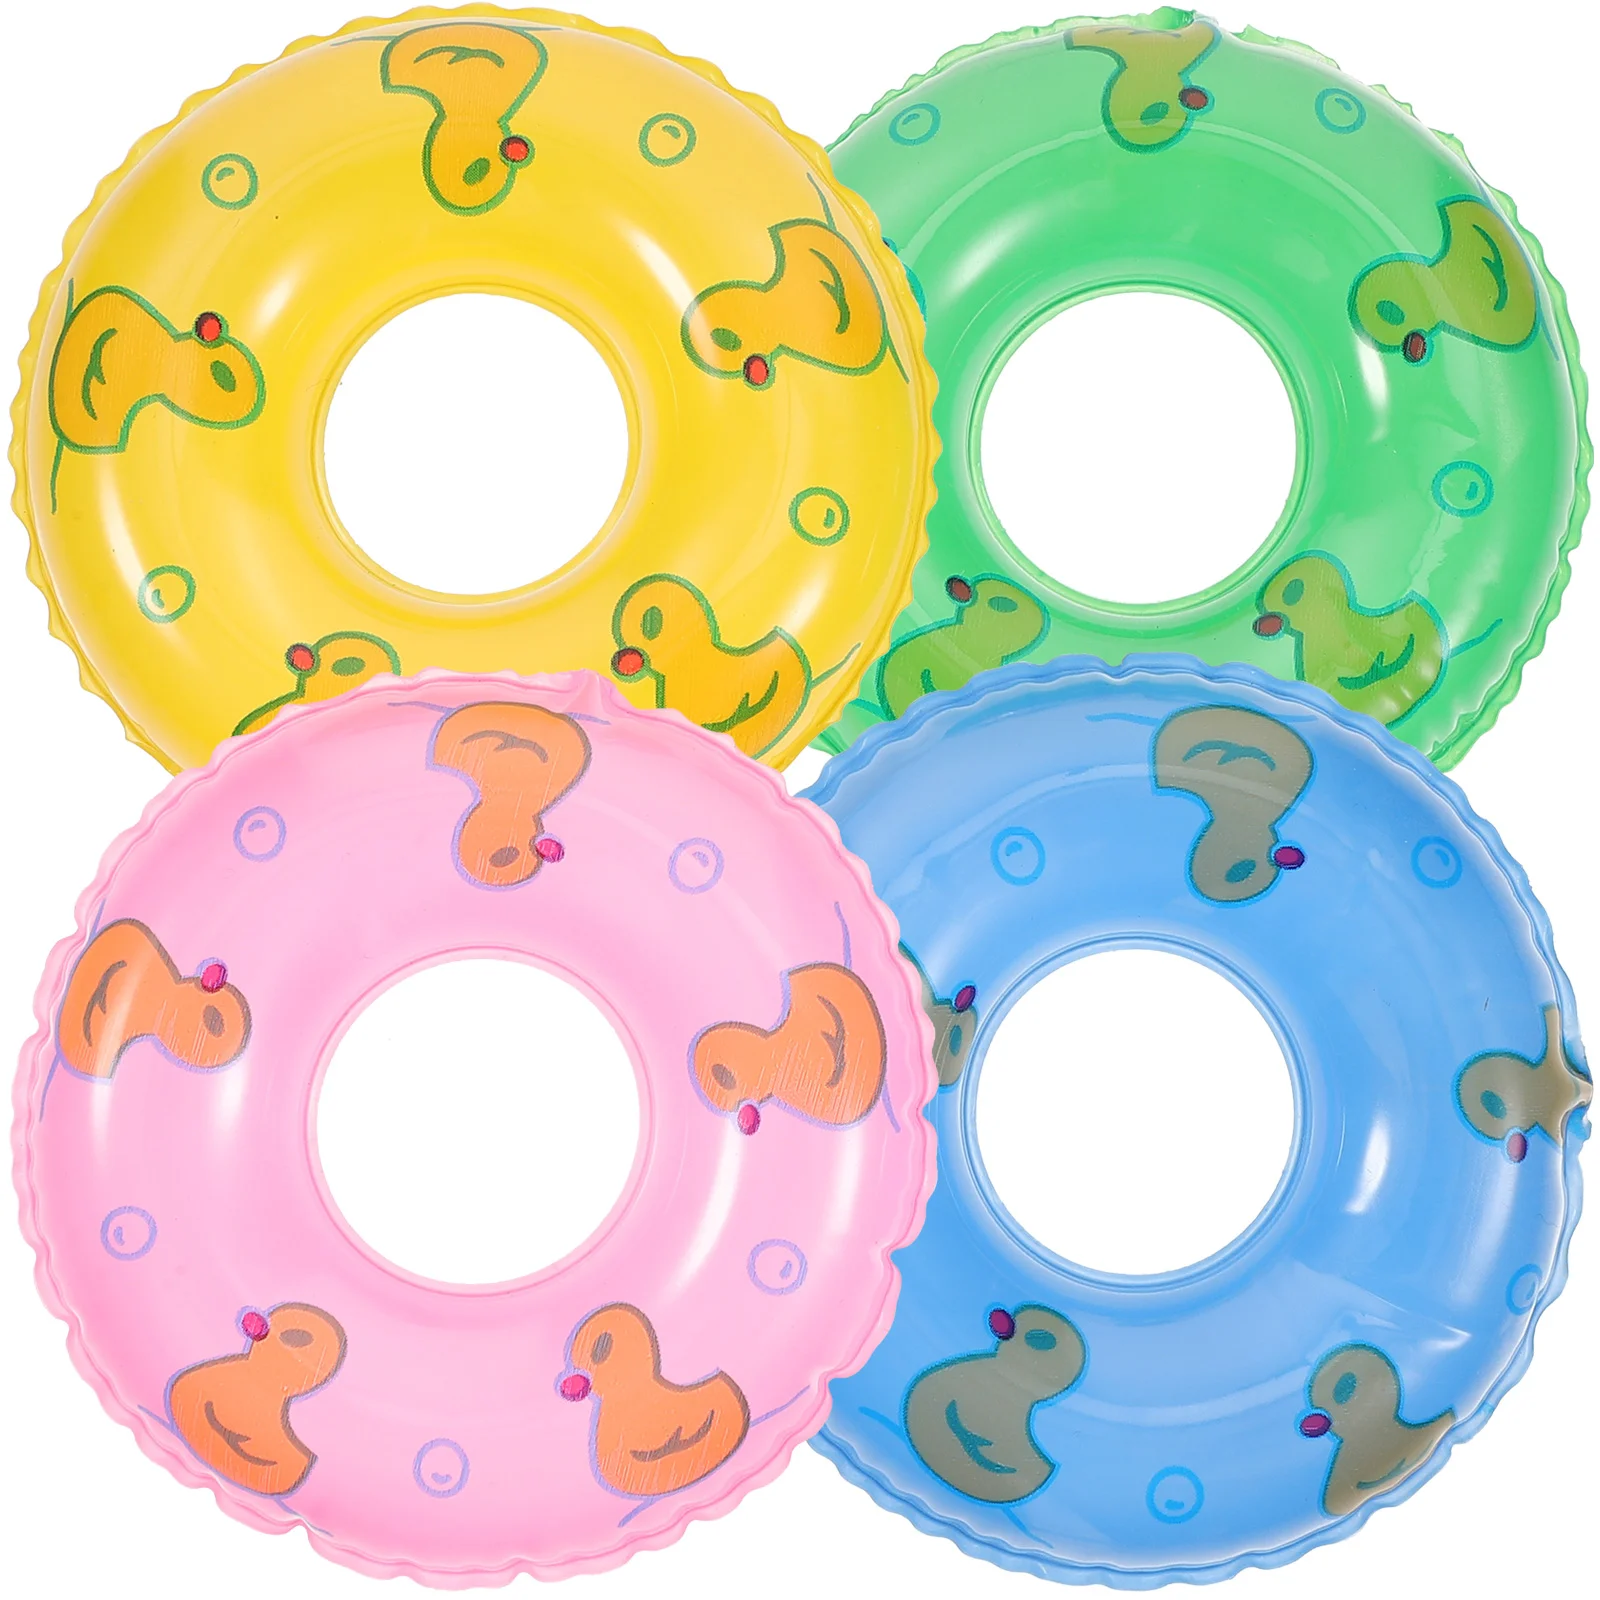 

Мини-кольцо для купания, надувной плавательный круг для детского бассейна, куклы, плавательный бассейн, аксессуары